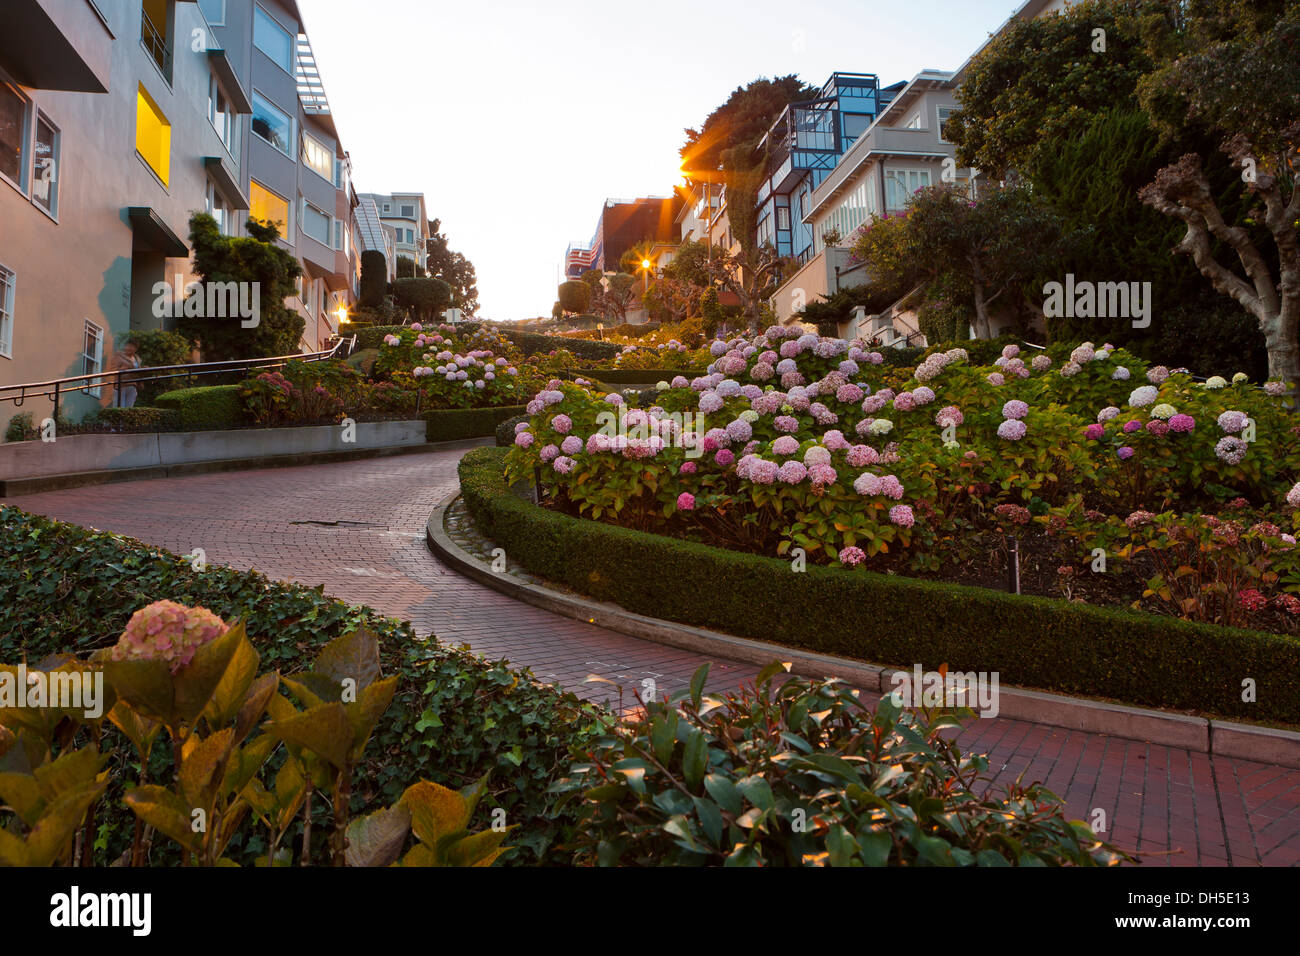 Lombard street - San Francisco, California USA Stock Photo